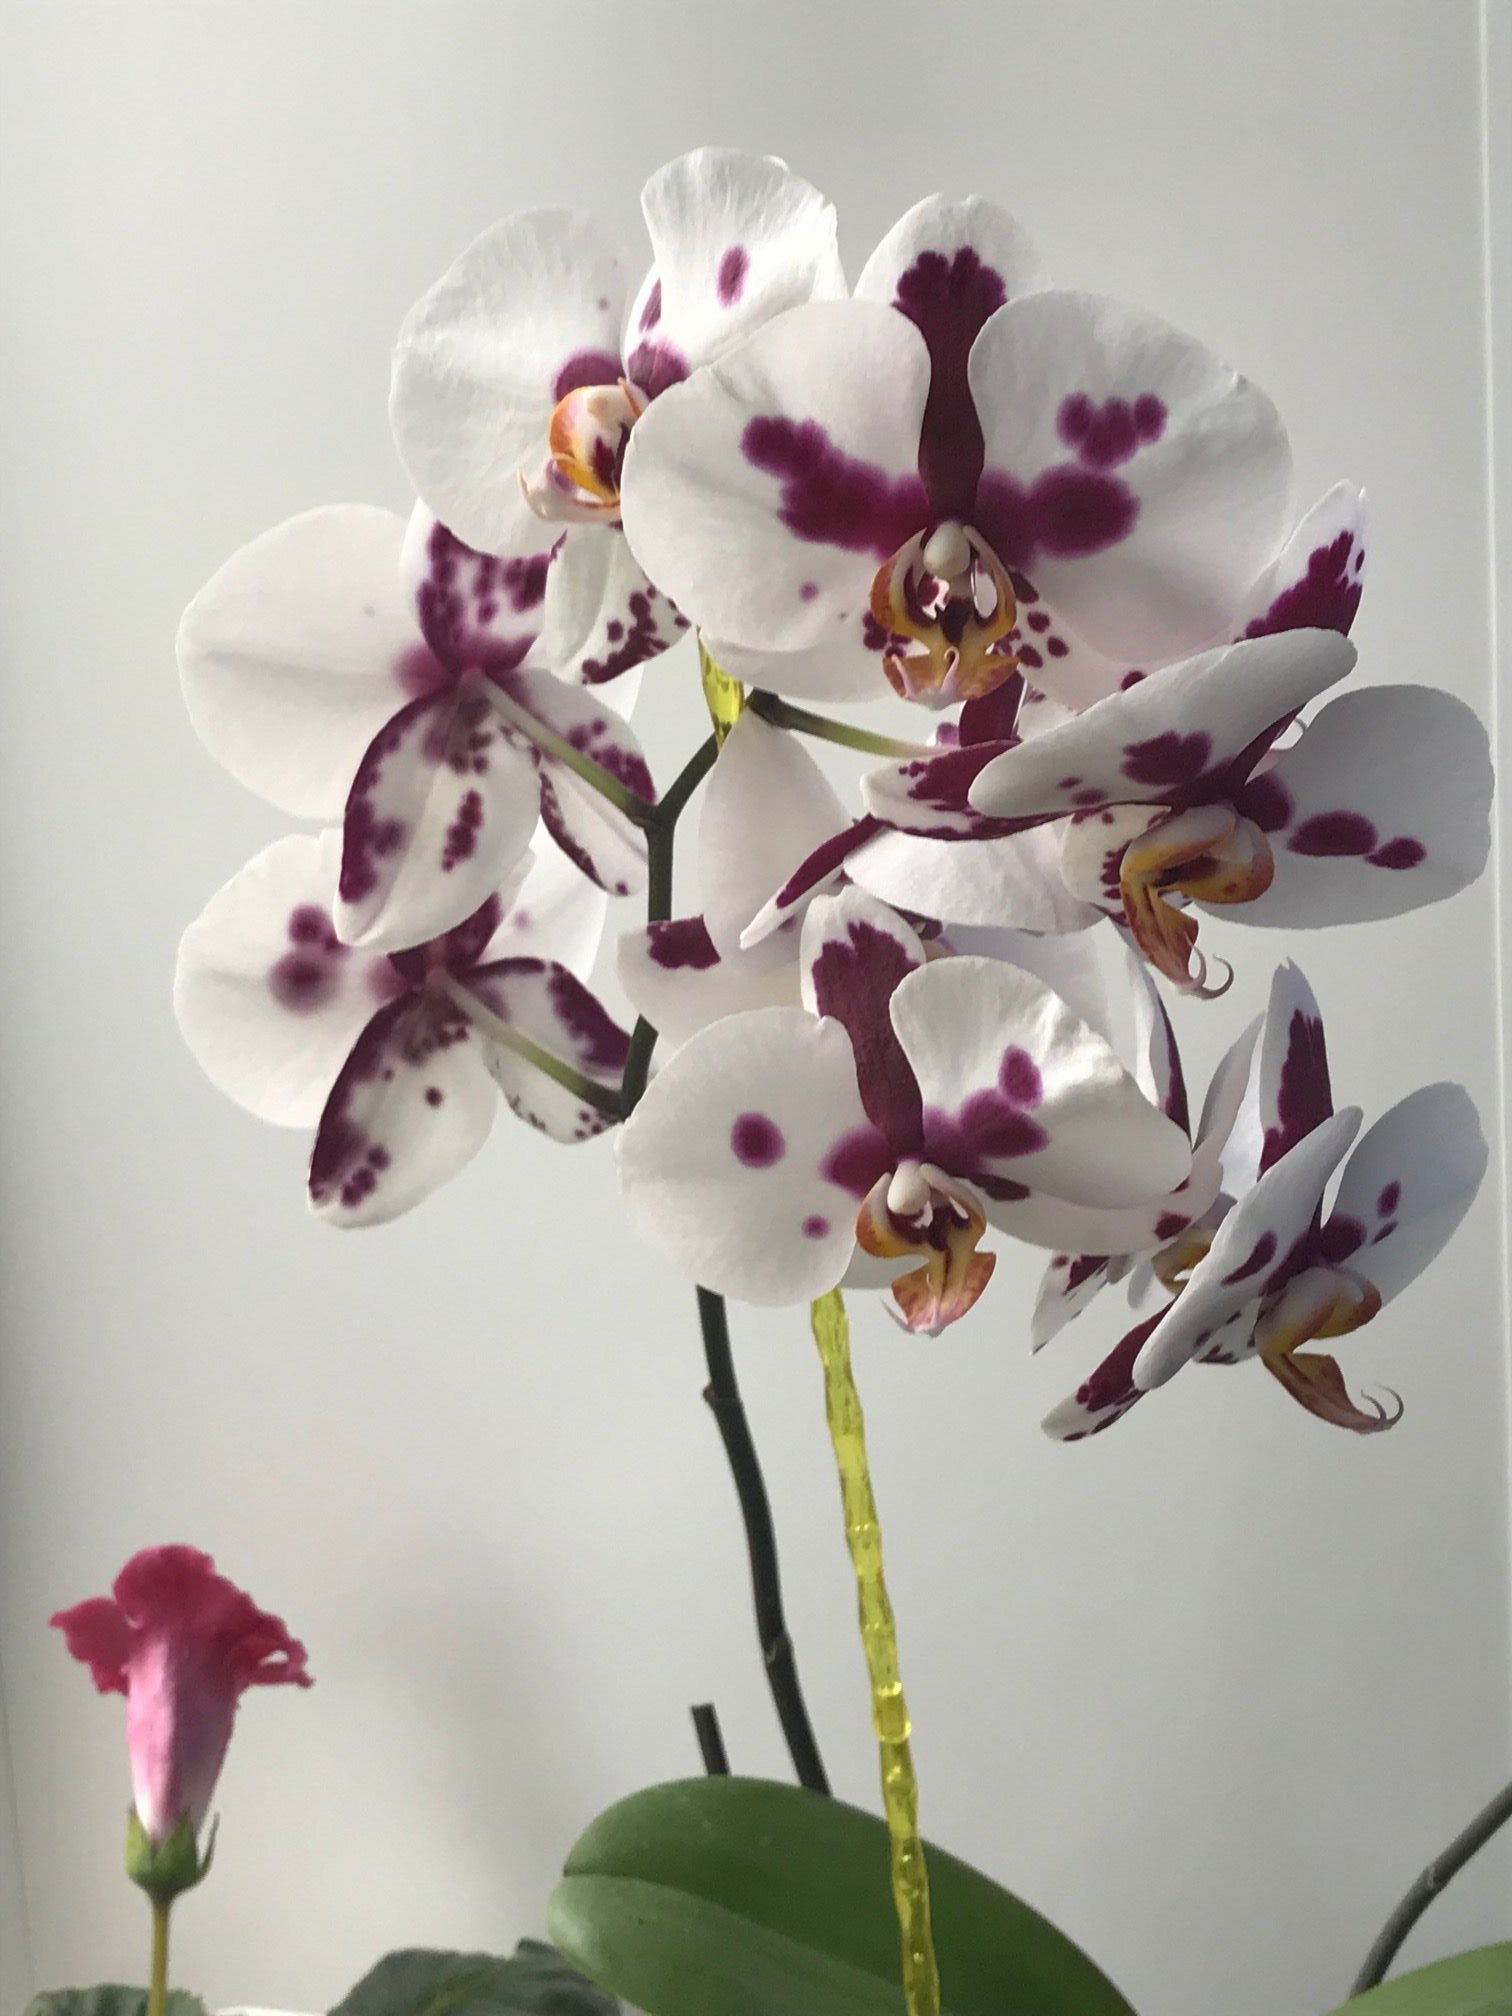 3 коварные ошибки, из-за которых орхидеи не цветут шапками круглый год